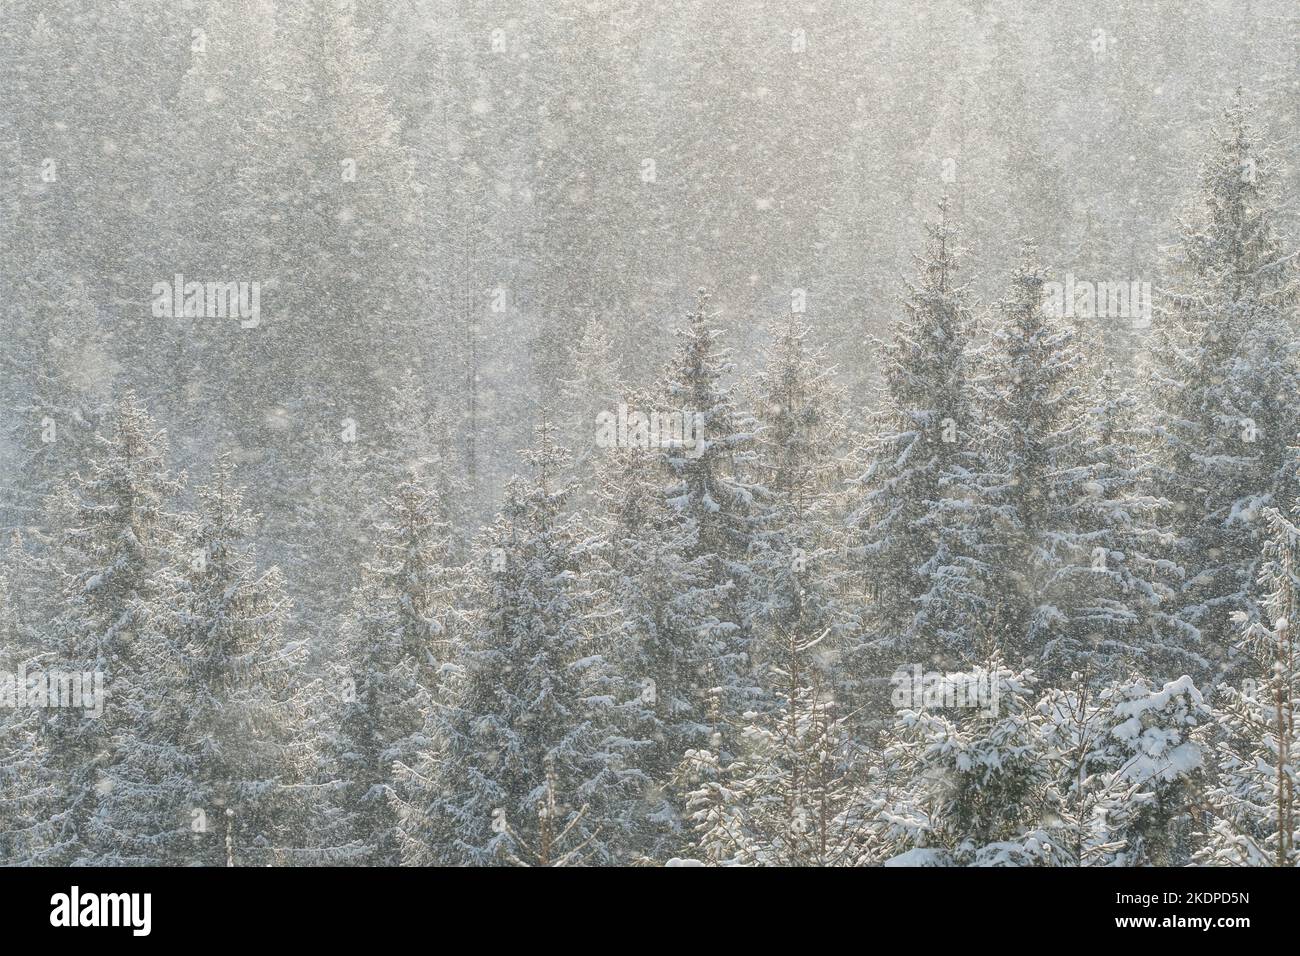 Belle scène d'hiver avec neige tombant dans la forêt de sapins Banque D'Images